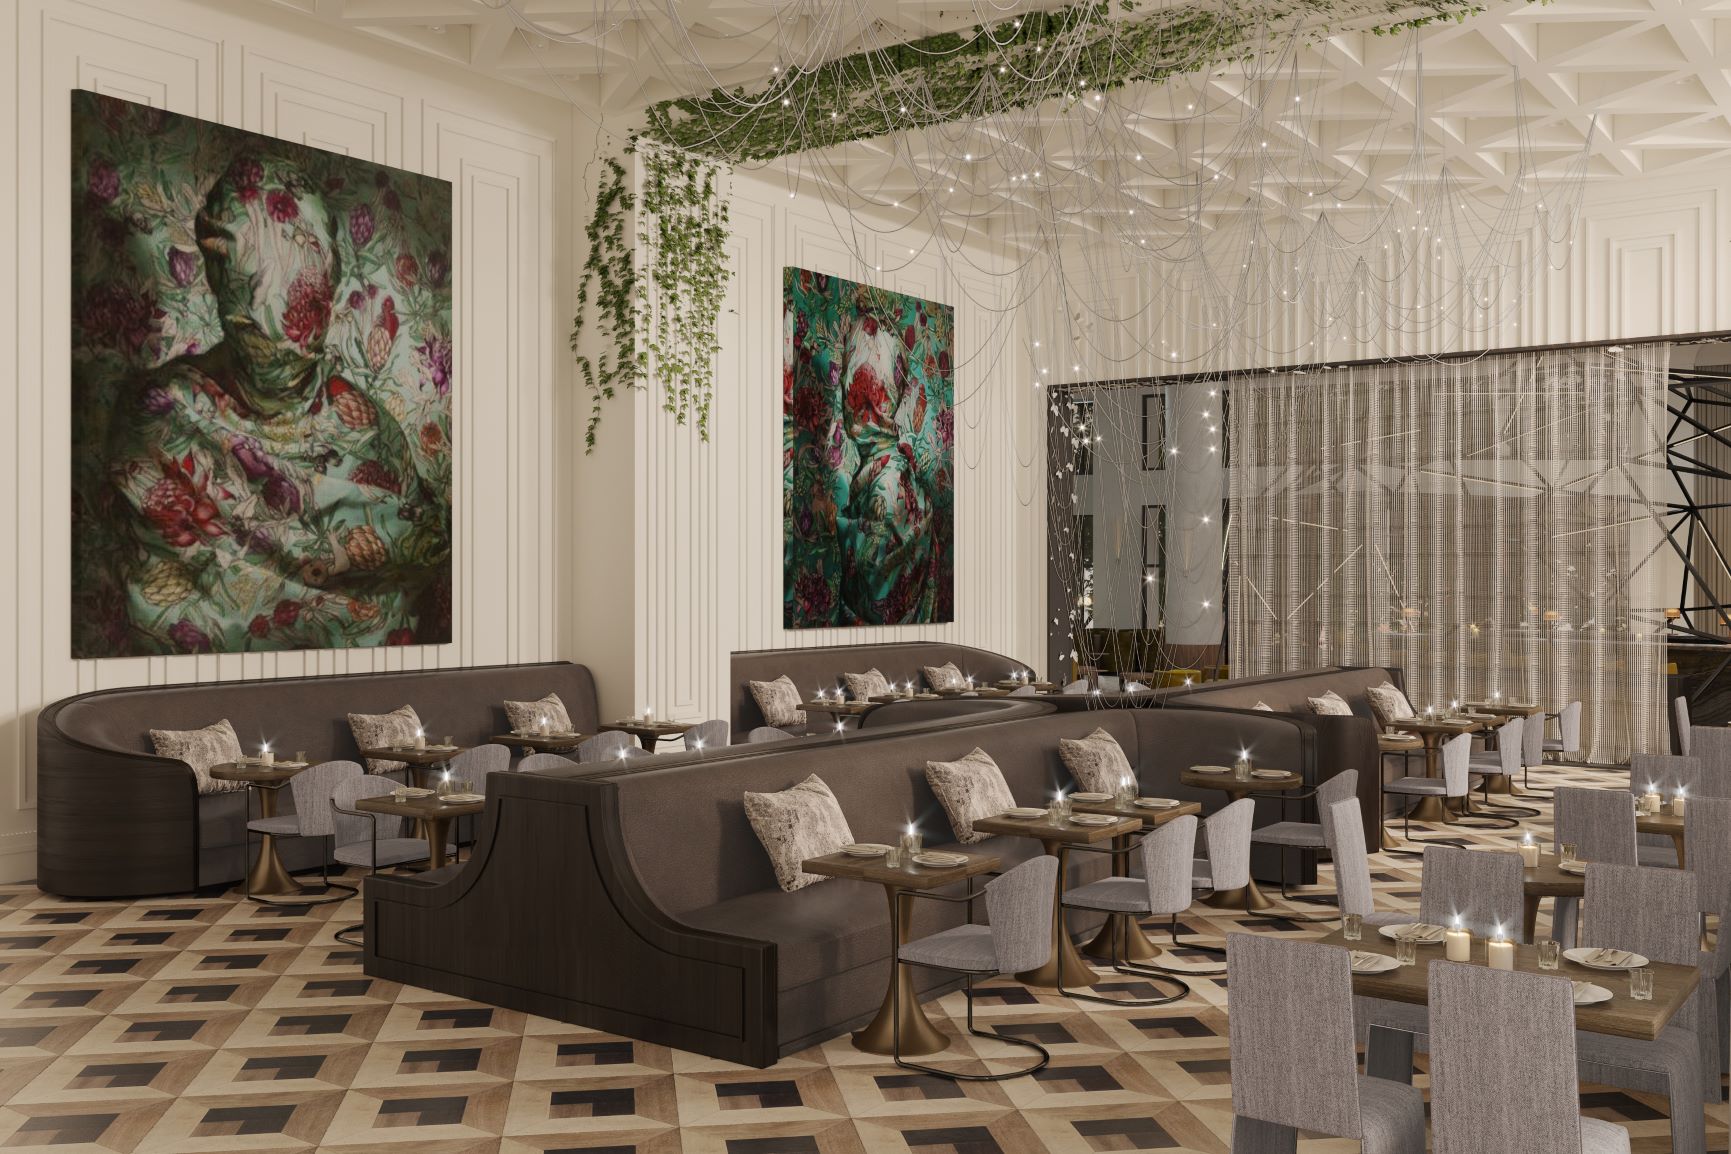 Daxton Hotel restaurant rendering